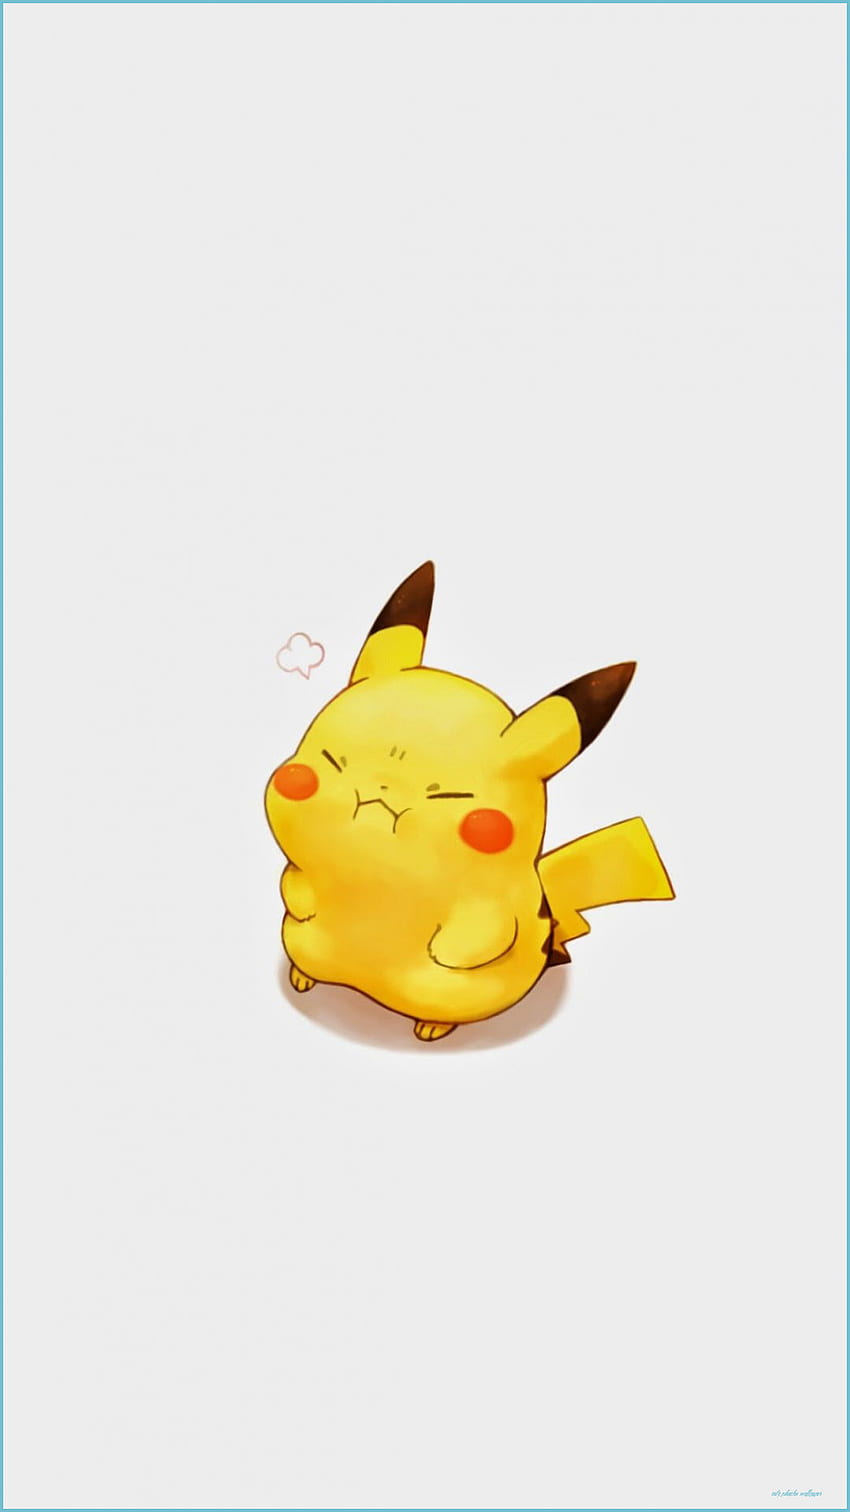 Toque para ver mais Pikachu fofos e engraçados! Pikachu - Pikachu Fofo, Pikachu Realmente Fofo Papel de parede de celular HD